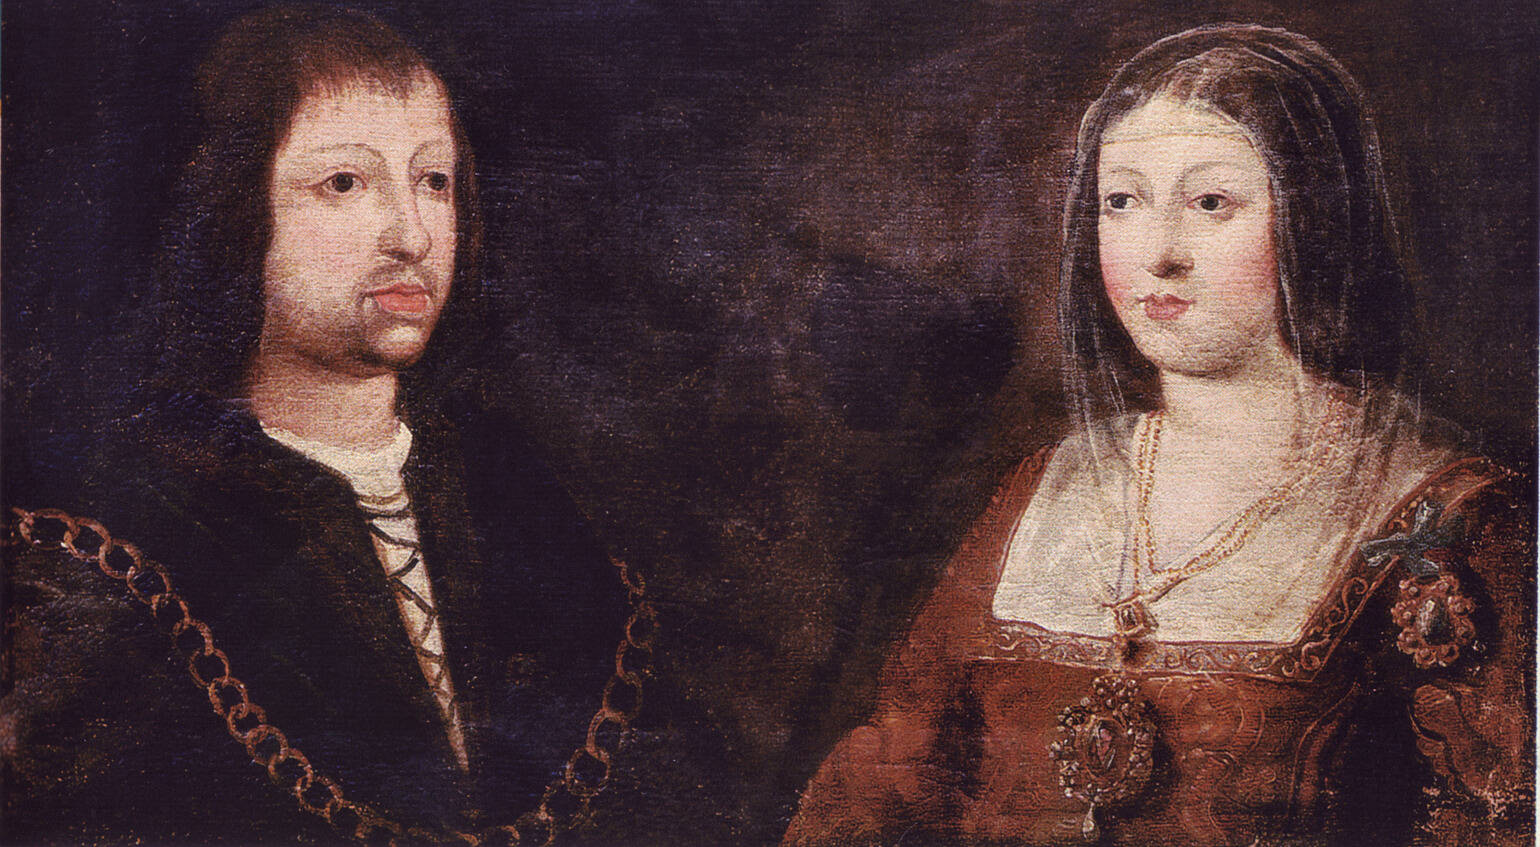 Свадебный портрет короля Фердинанда Арагонского и королевы Изабеллы Кастильской. XV век. Автор неизвестен.